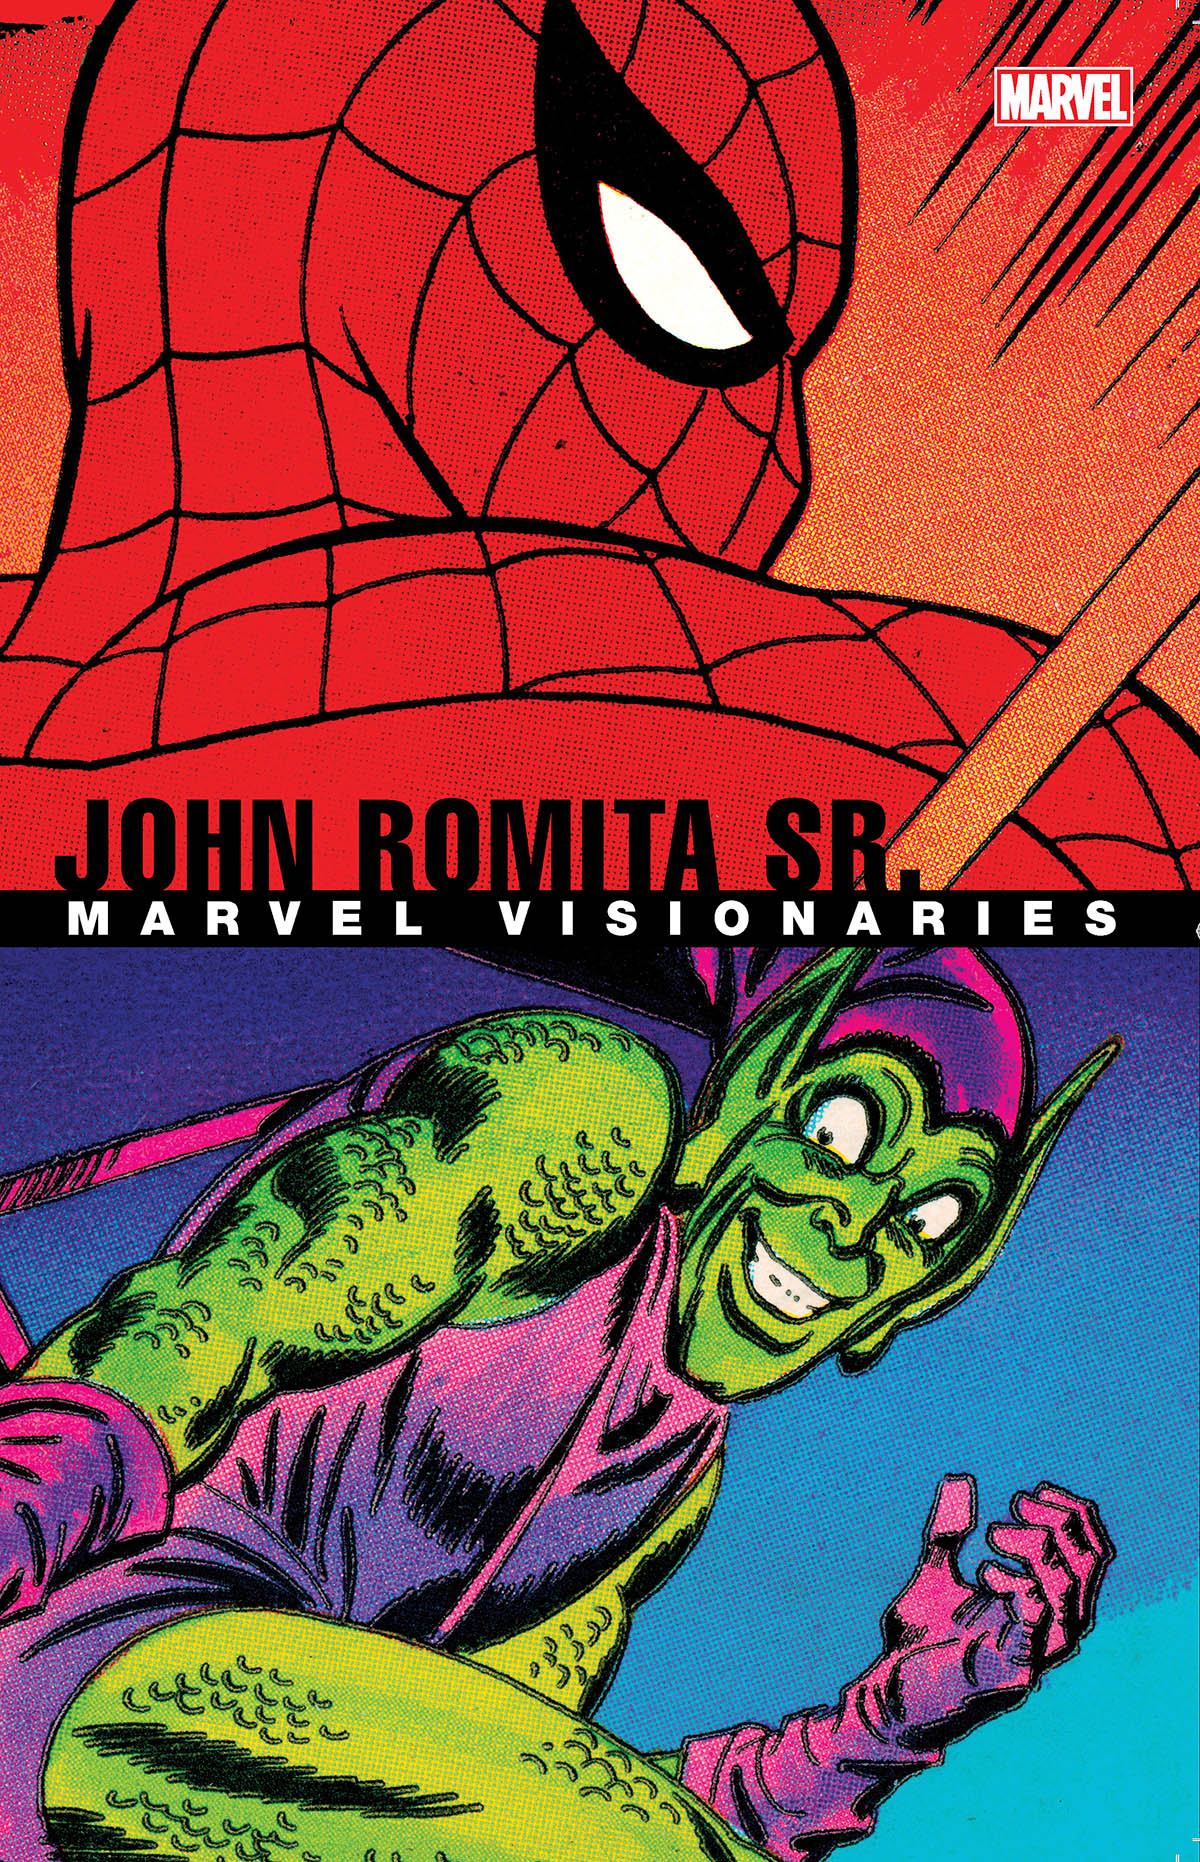 Marvel Visionaries: John Romita Sr. (Trade Paperback) - Comic Issues - Comic Books - Marvel Marvel Visionaries: John Romita Sr. (Trade Paperback) - Comic Issues - Marvel - 웹